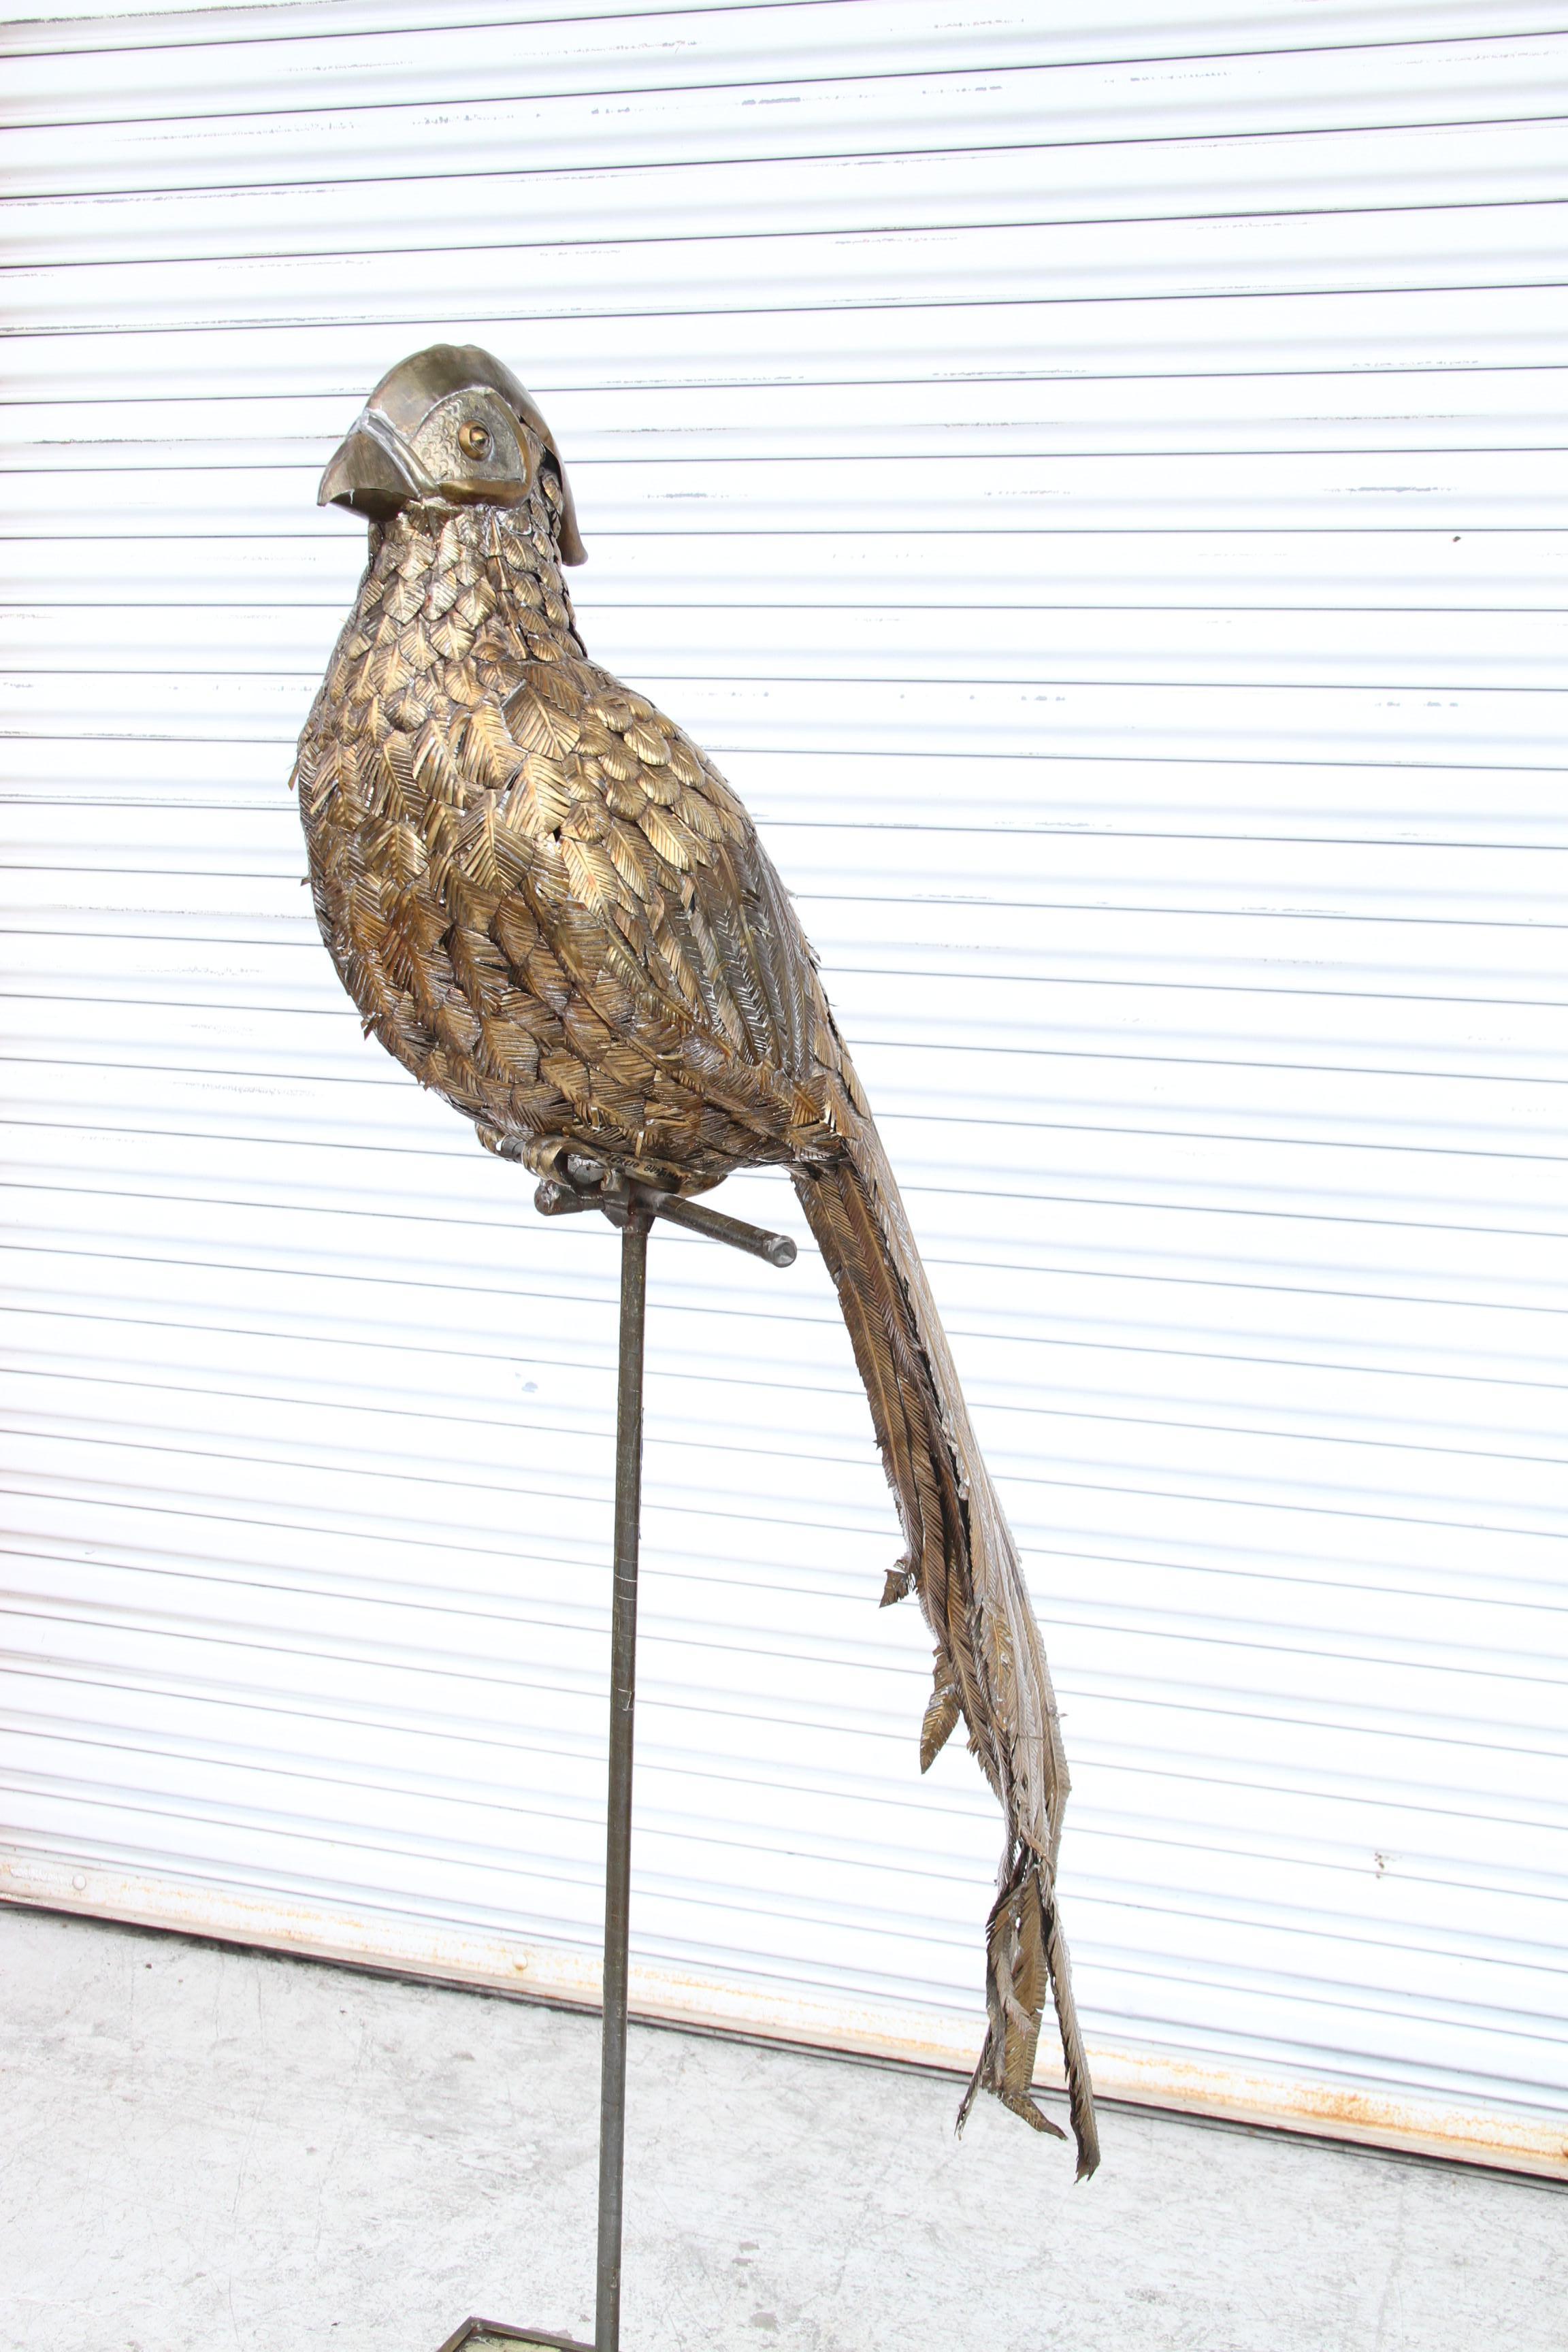 Grande sculpture d'oiseau faisan de Sergio Bustamante de 5FT signée 54/100

Sergio Bustamante est un artiste et sculpteur de renommée mondiale dont les œuvres sont collectionnées dans le monde entier.
Cette sculpture en laiton et en cuivre mesure